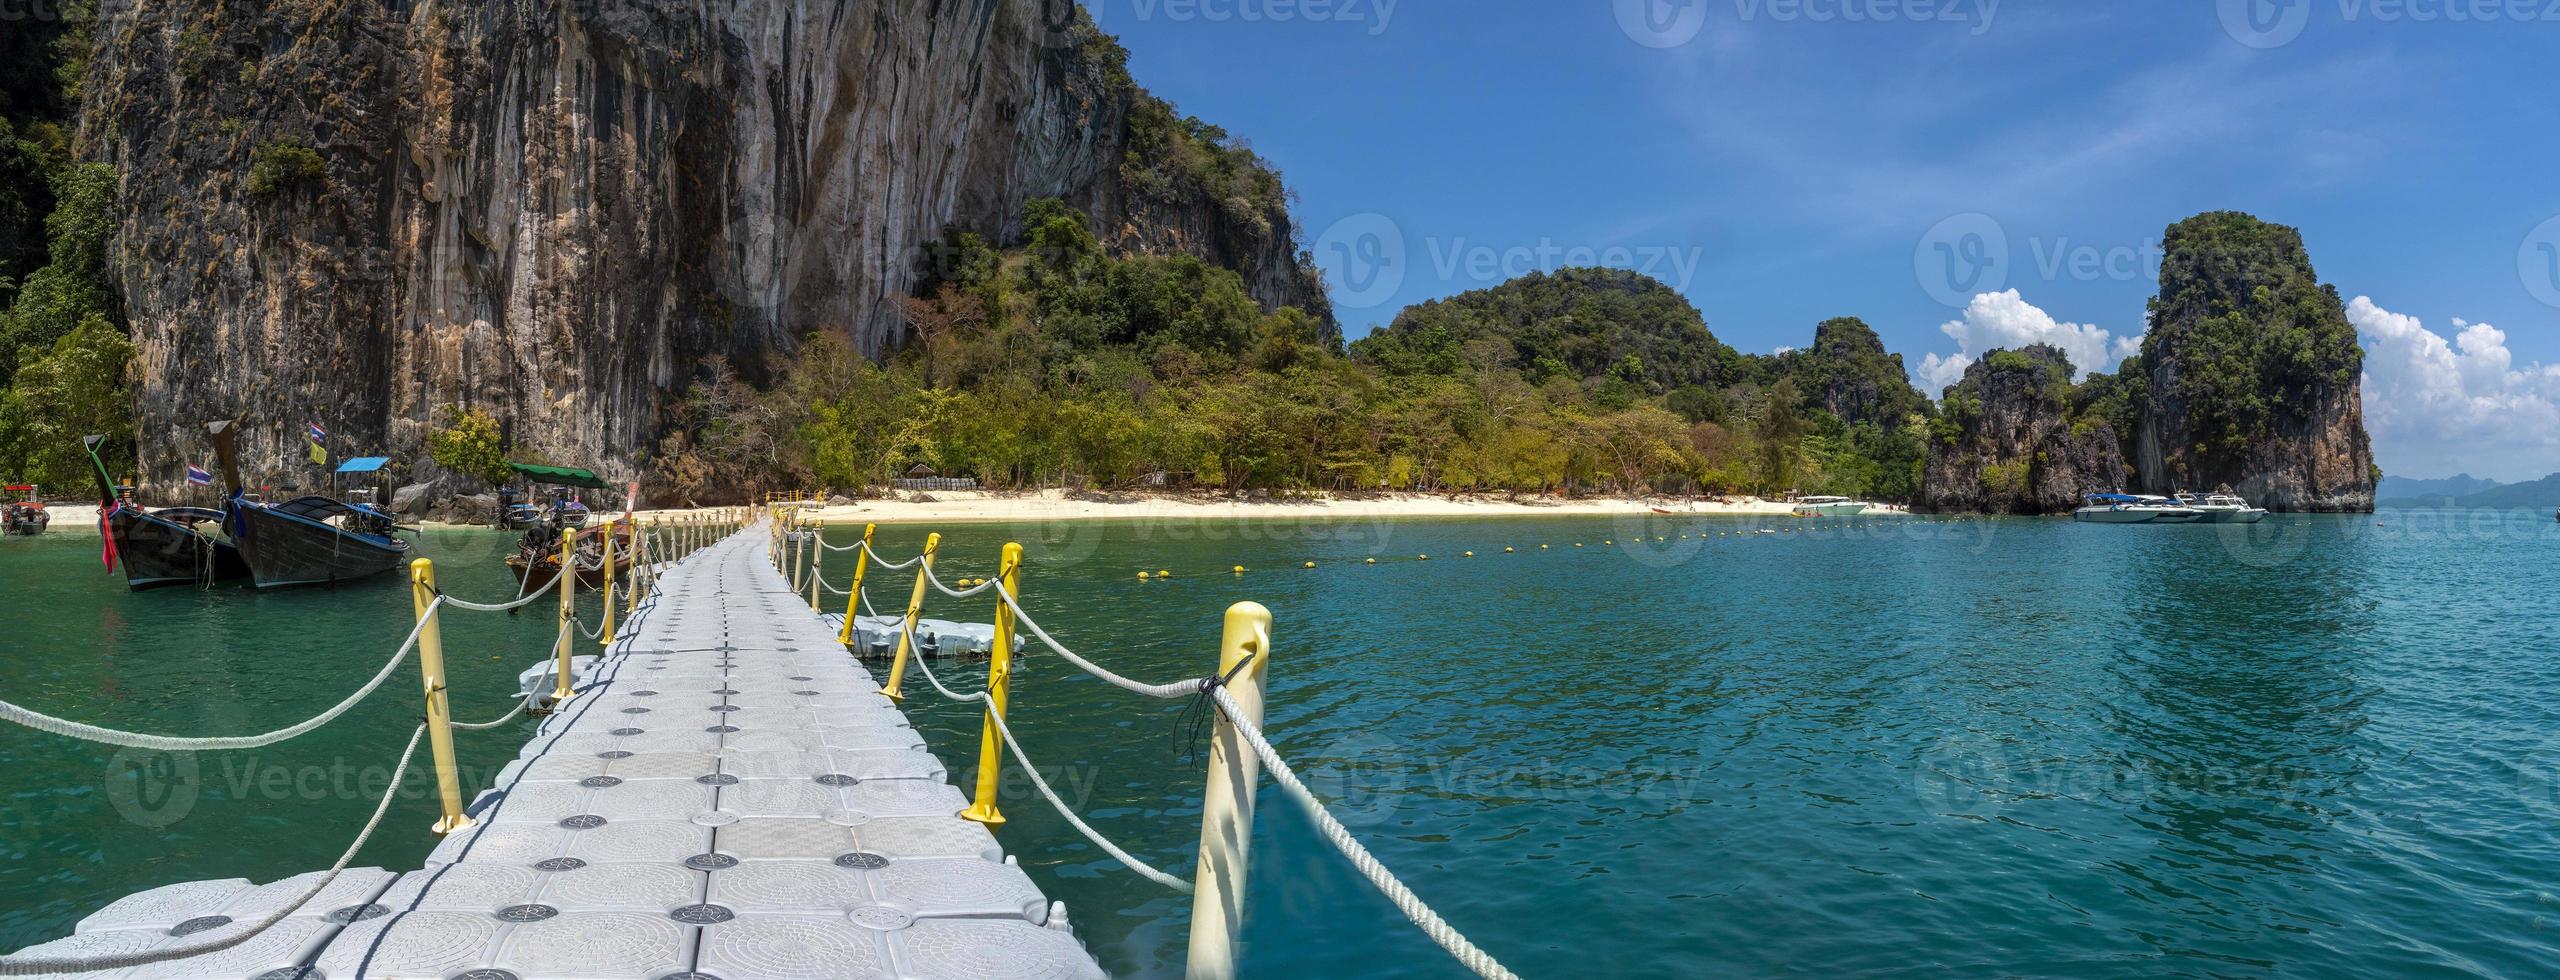 blauwe zee bij koh hong, krabi provincie, thailand foto